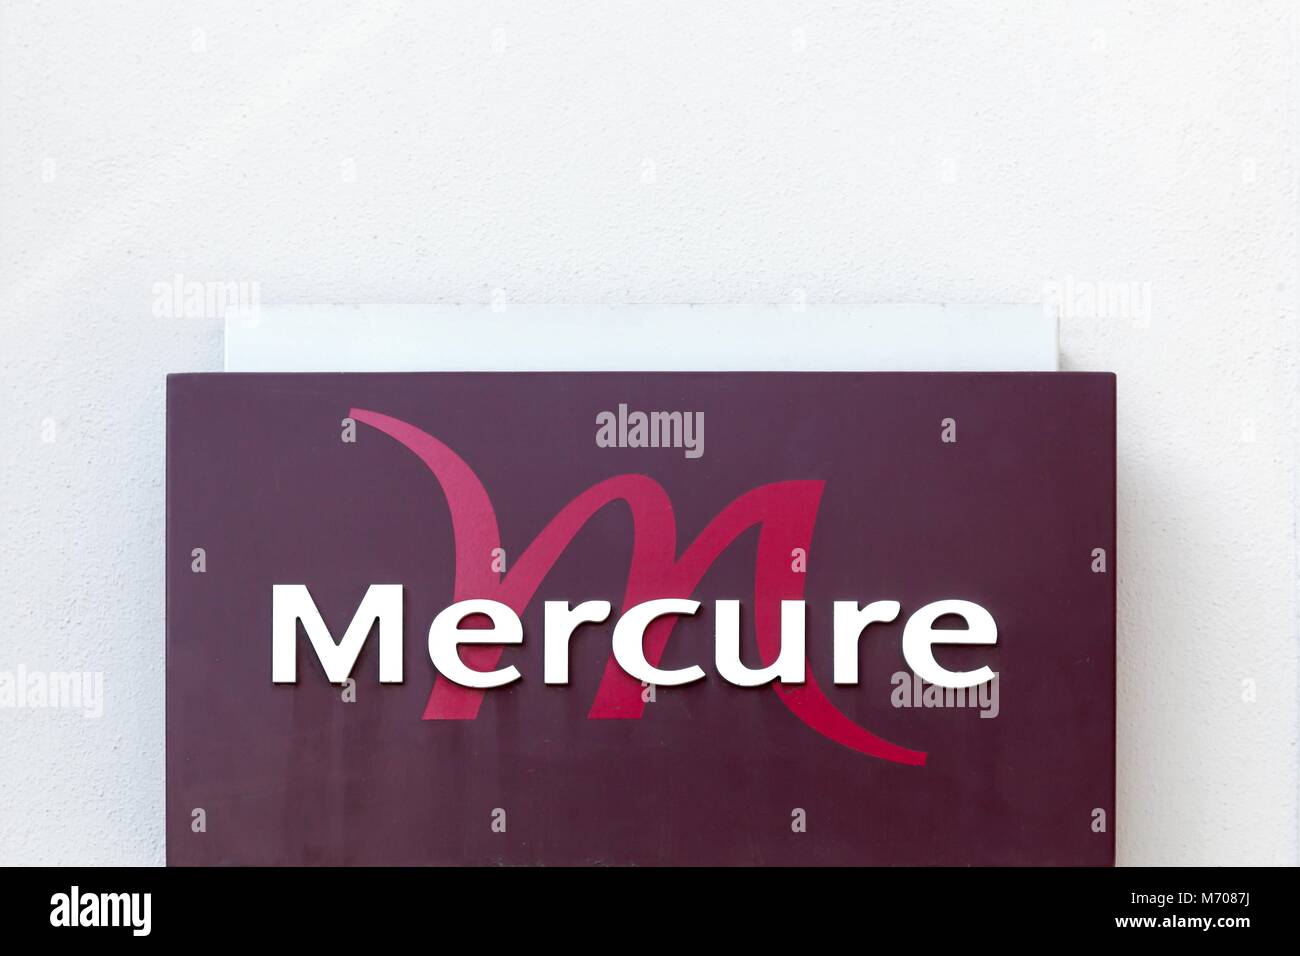 Sennece, Francia - 15 Aprile 2016: Mercure hotel segno su una parete. Il Mercure hotel è un hotel internazionale di società di proprietà del gruppo Accor Foto Stock